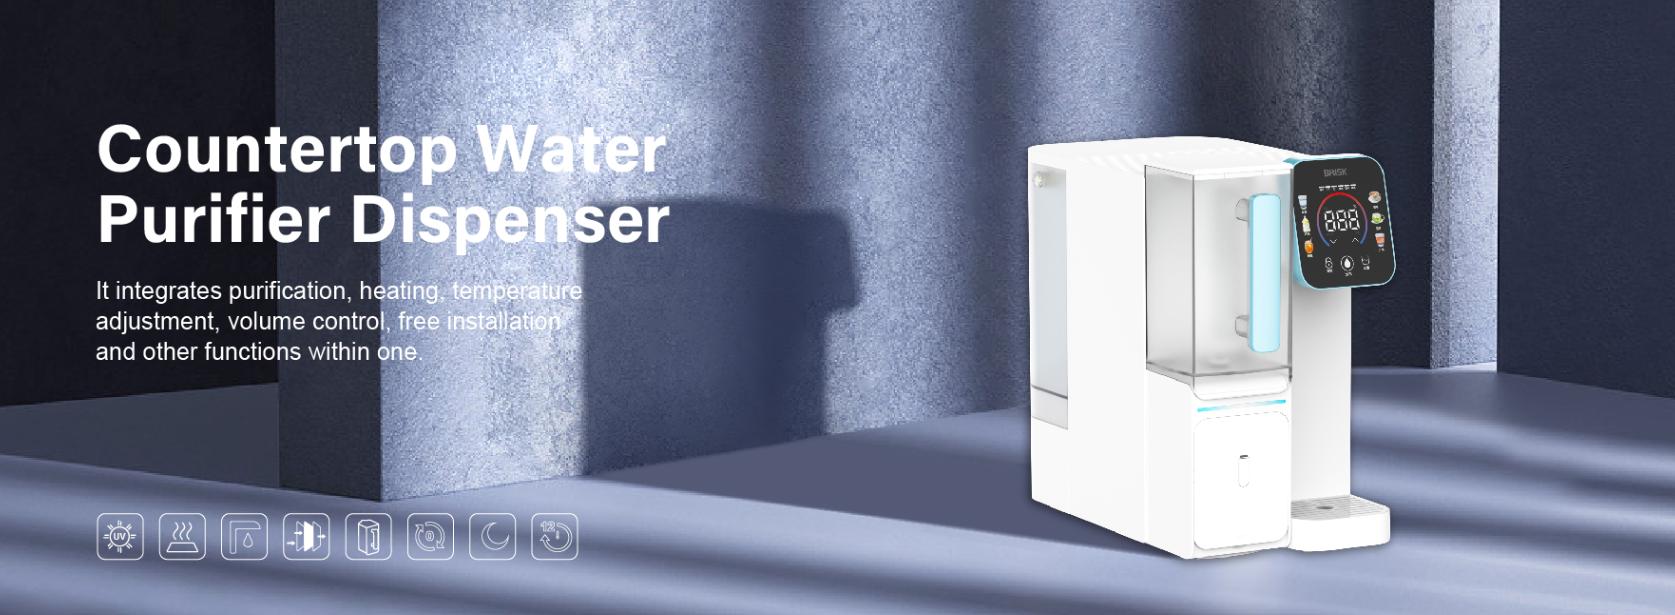 Countertop Water Purifier Dispenser